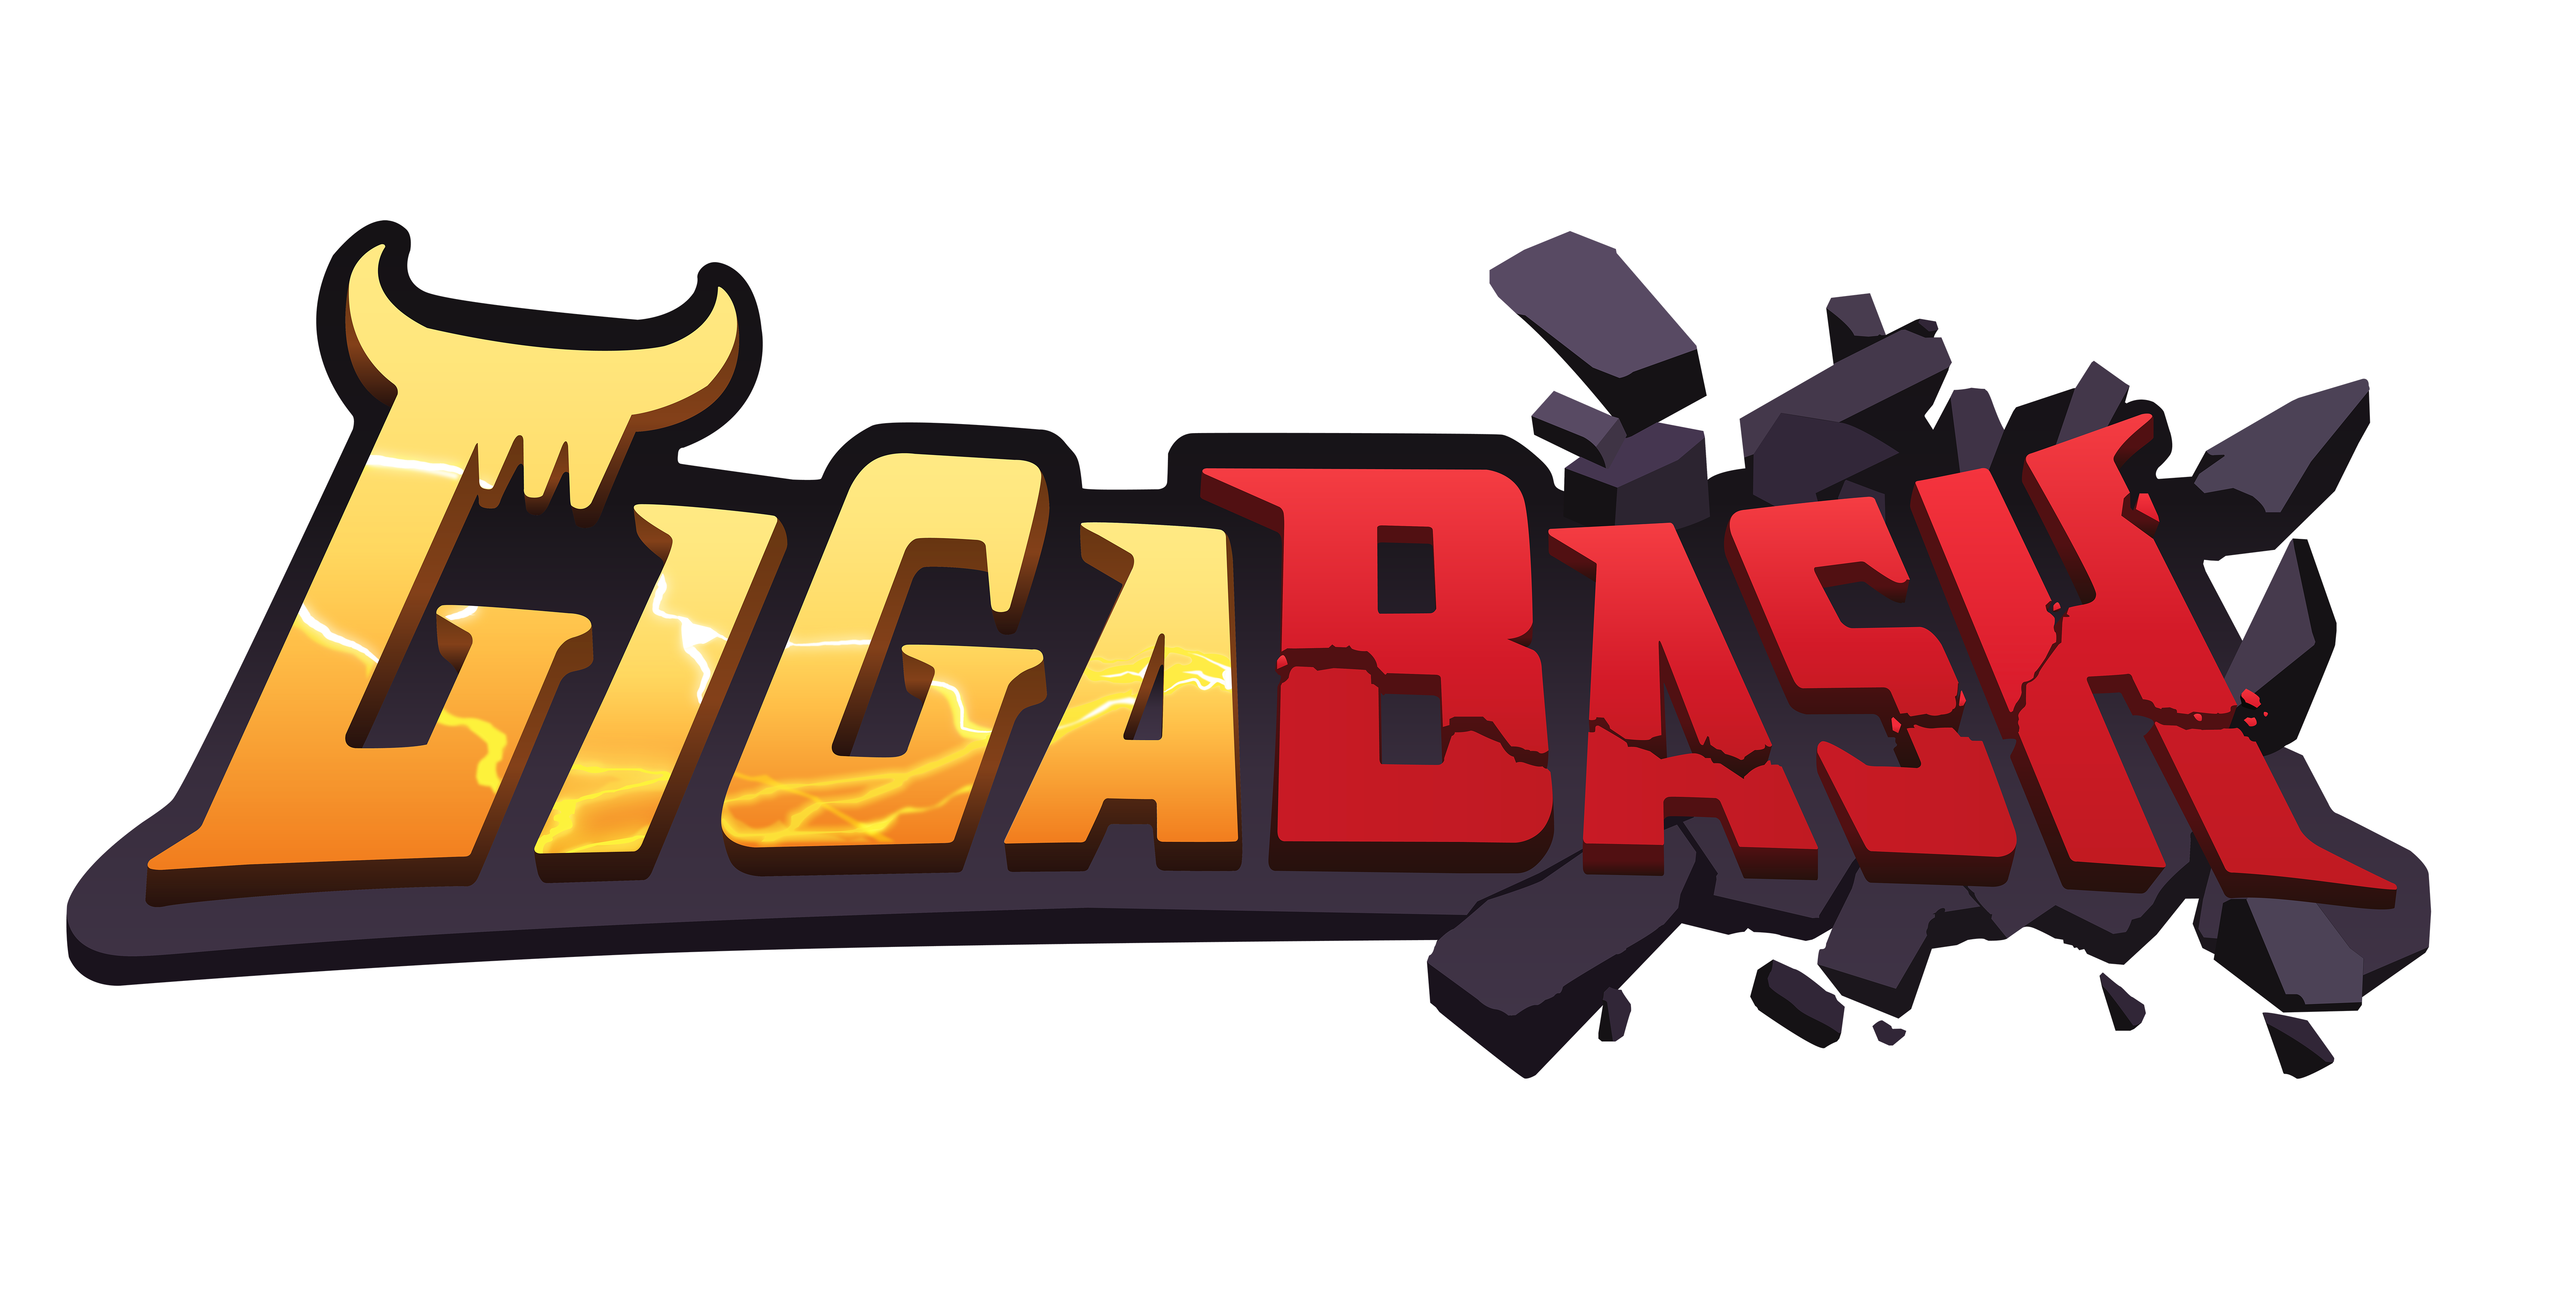 Le jeu Kaiju Gigabash est maintenant disponible pour PC et